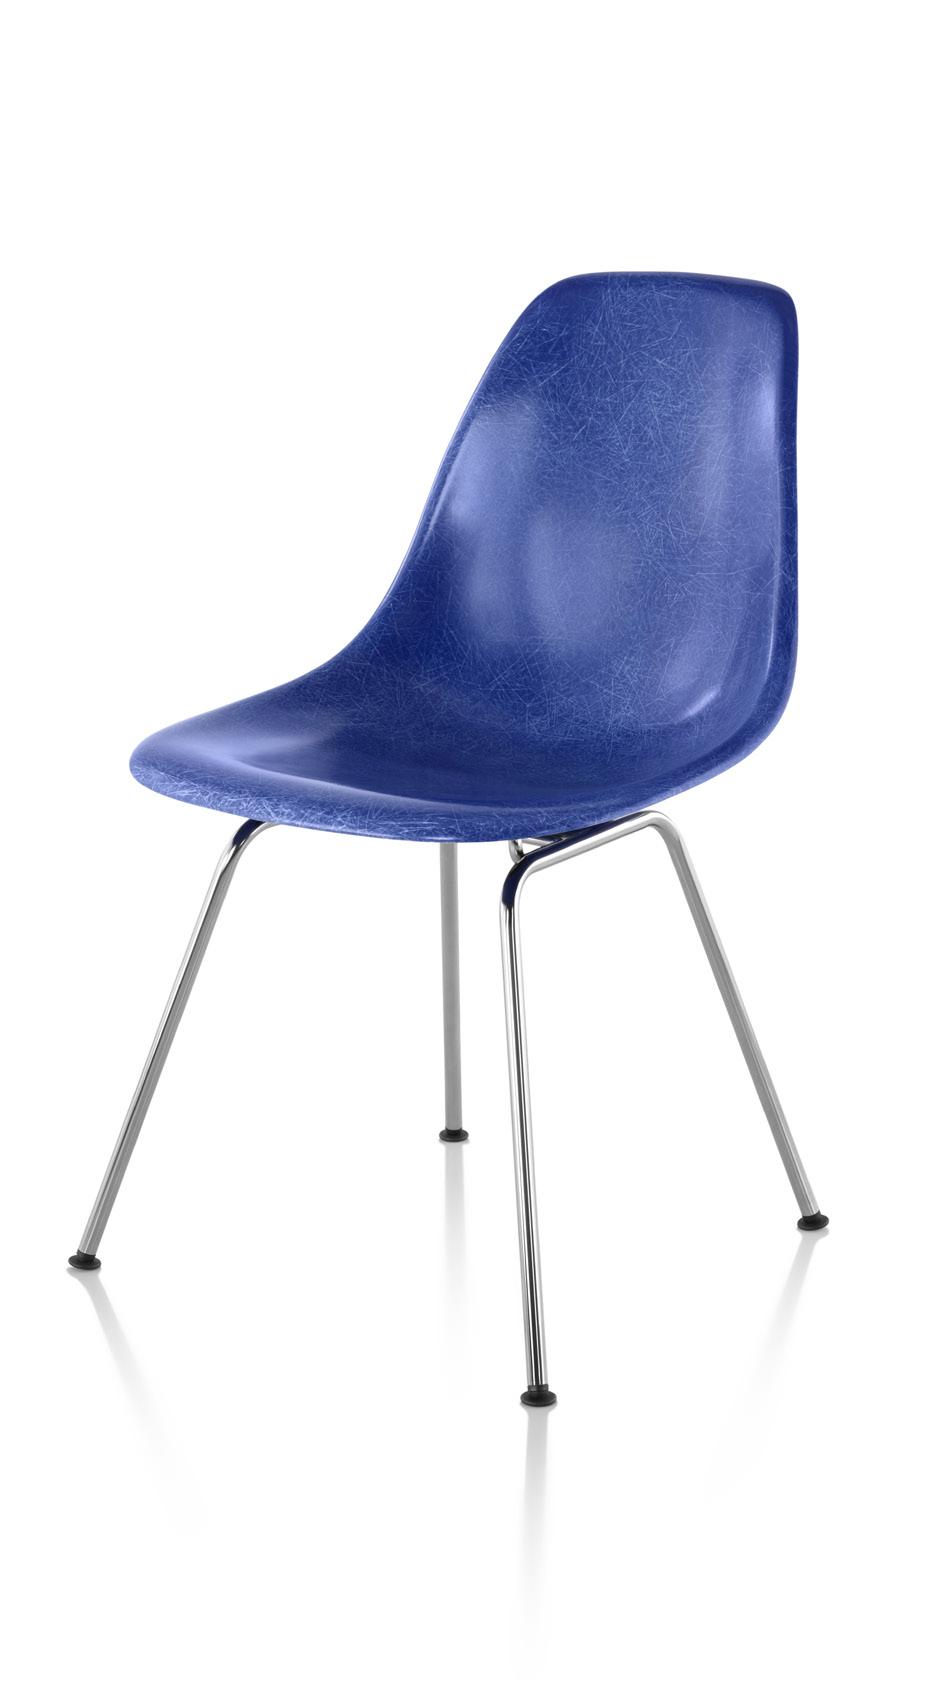 Eames Molded Fiberglass Side Chair 4-Leg Base 19%